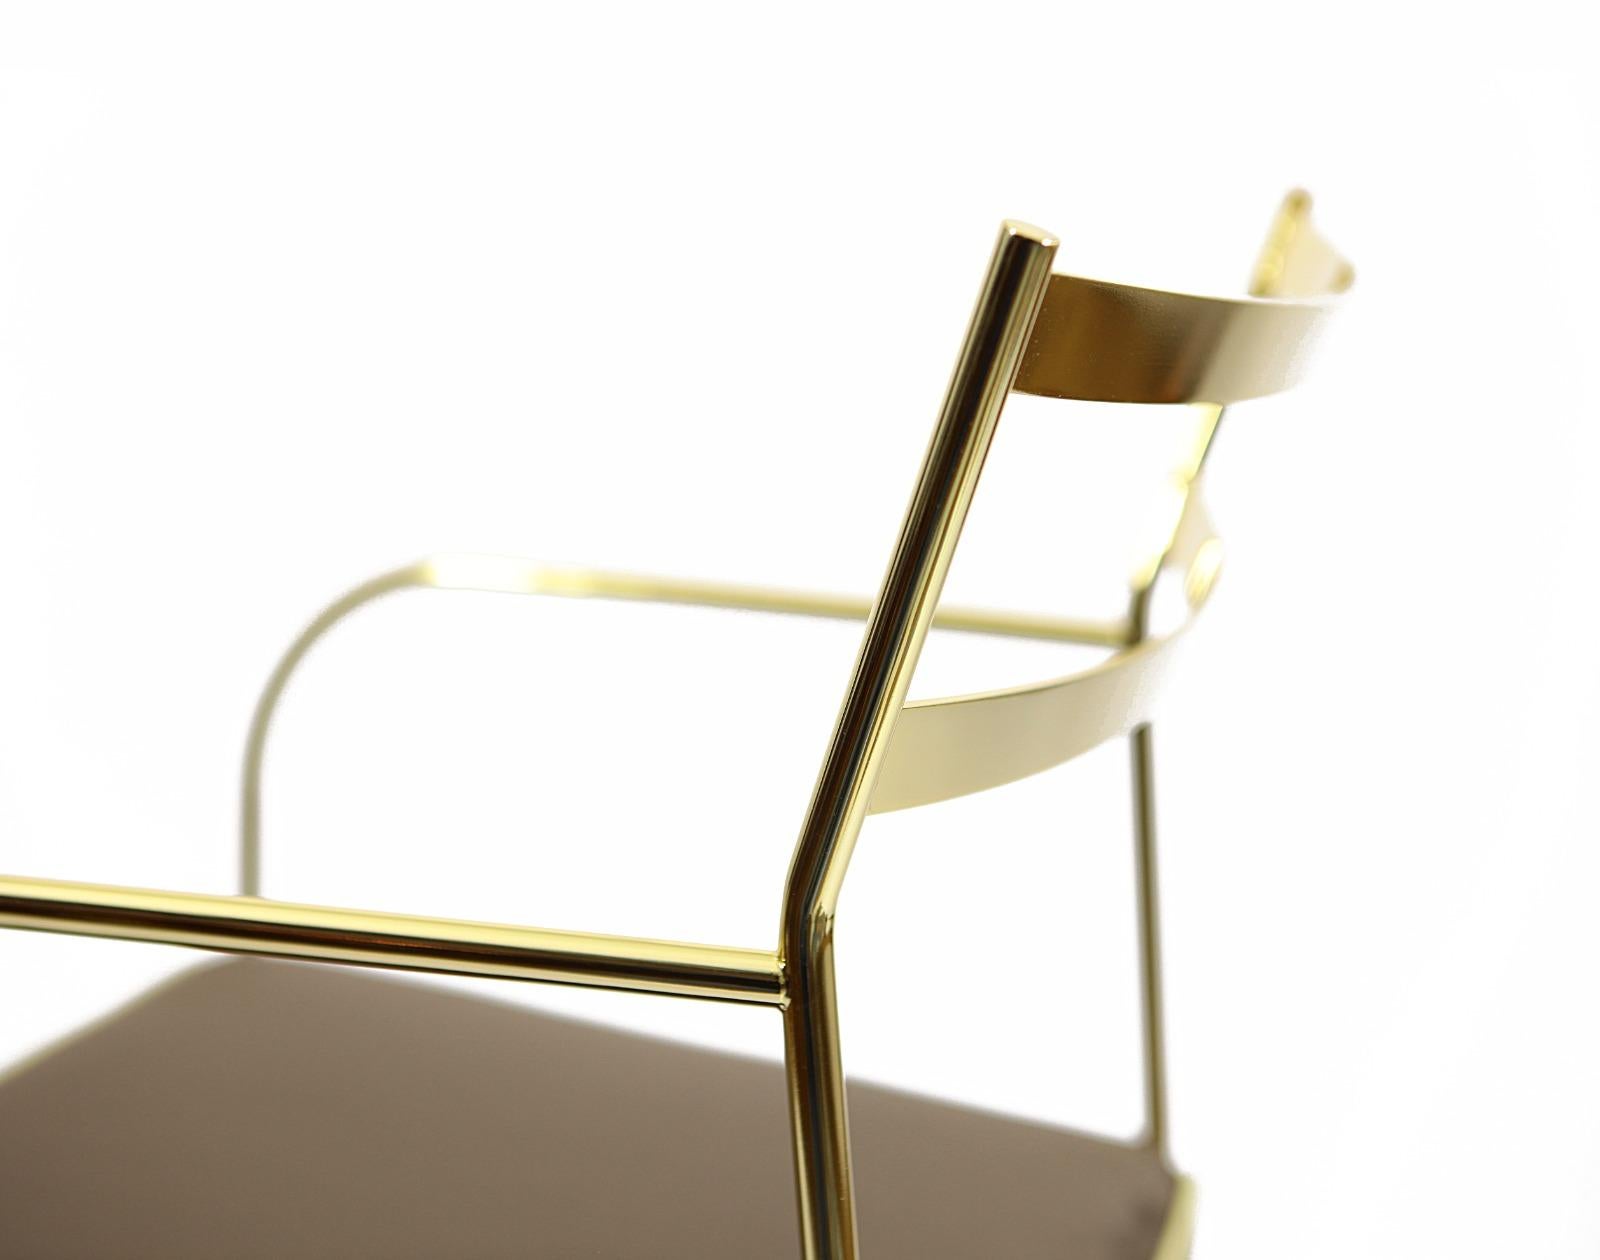 Cette chaise unique est dotée d'une structure en fer recouverte d'une couche d'or 24 carats et d'élégants pieds en laiton galvanisé.  Les sièges sont recouverts de velours de coton  et décorée d'un élégant liseré jaune sur tout le pourtour